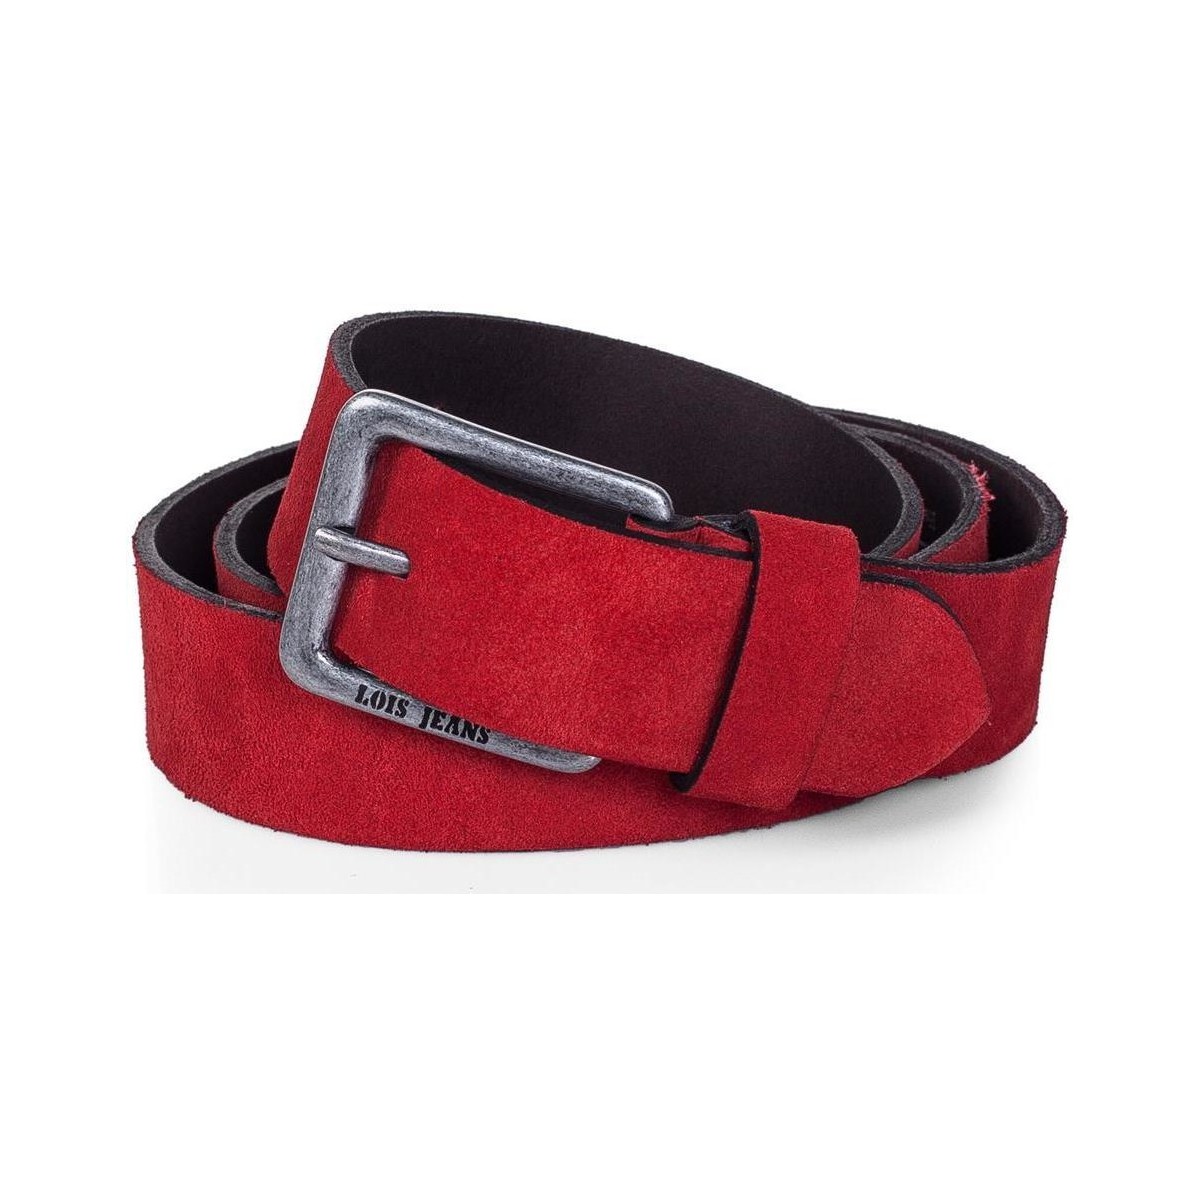 Accesorios textil Cinturones Lois Cinturones Rojo